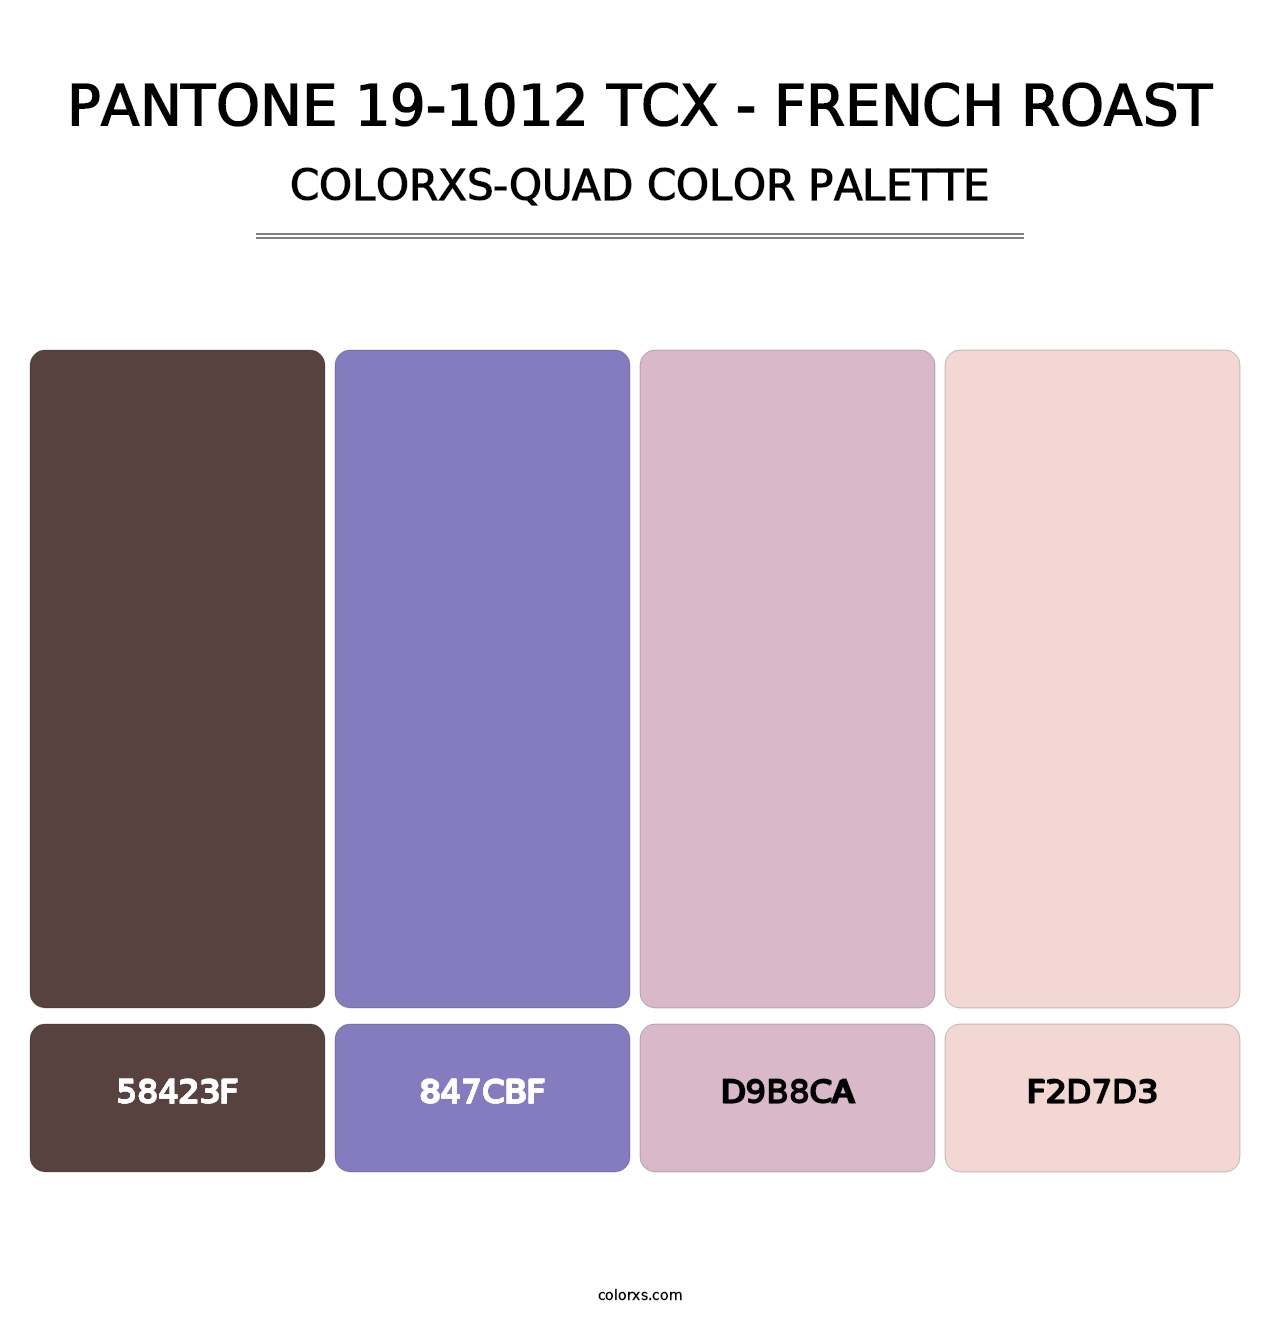 PANTONE 19-1012 TCX - French Roast - Colorxs Quad Palette